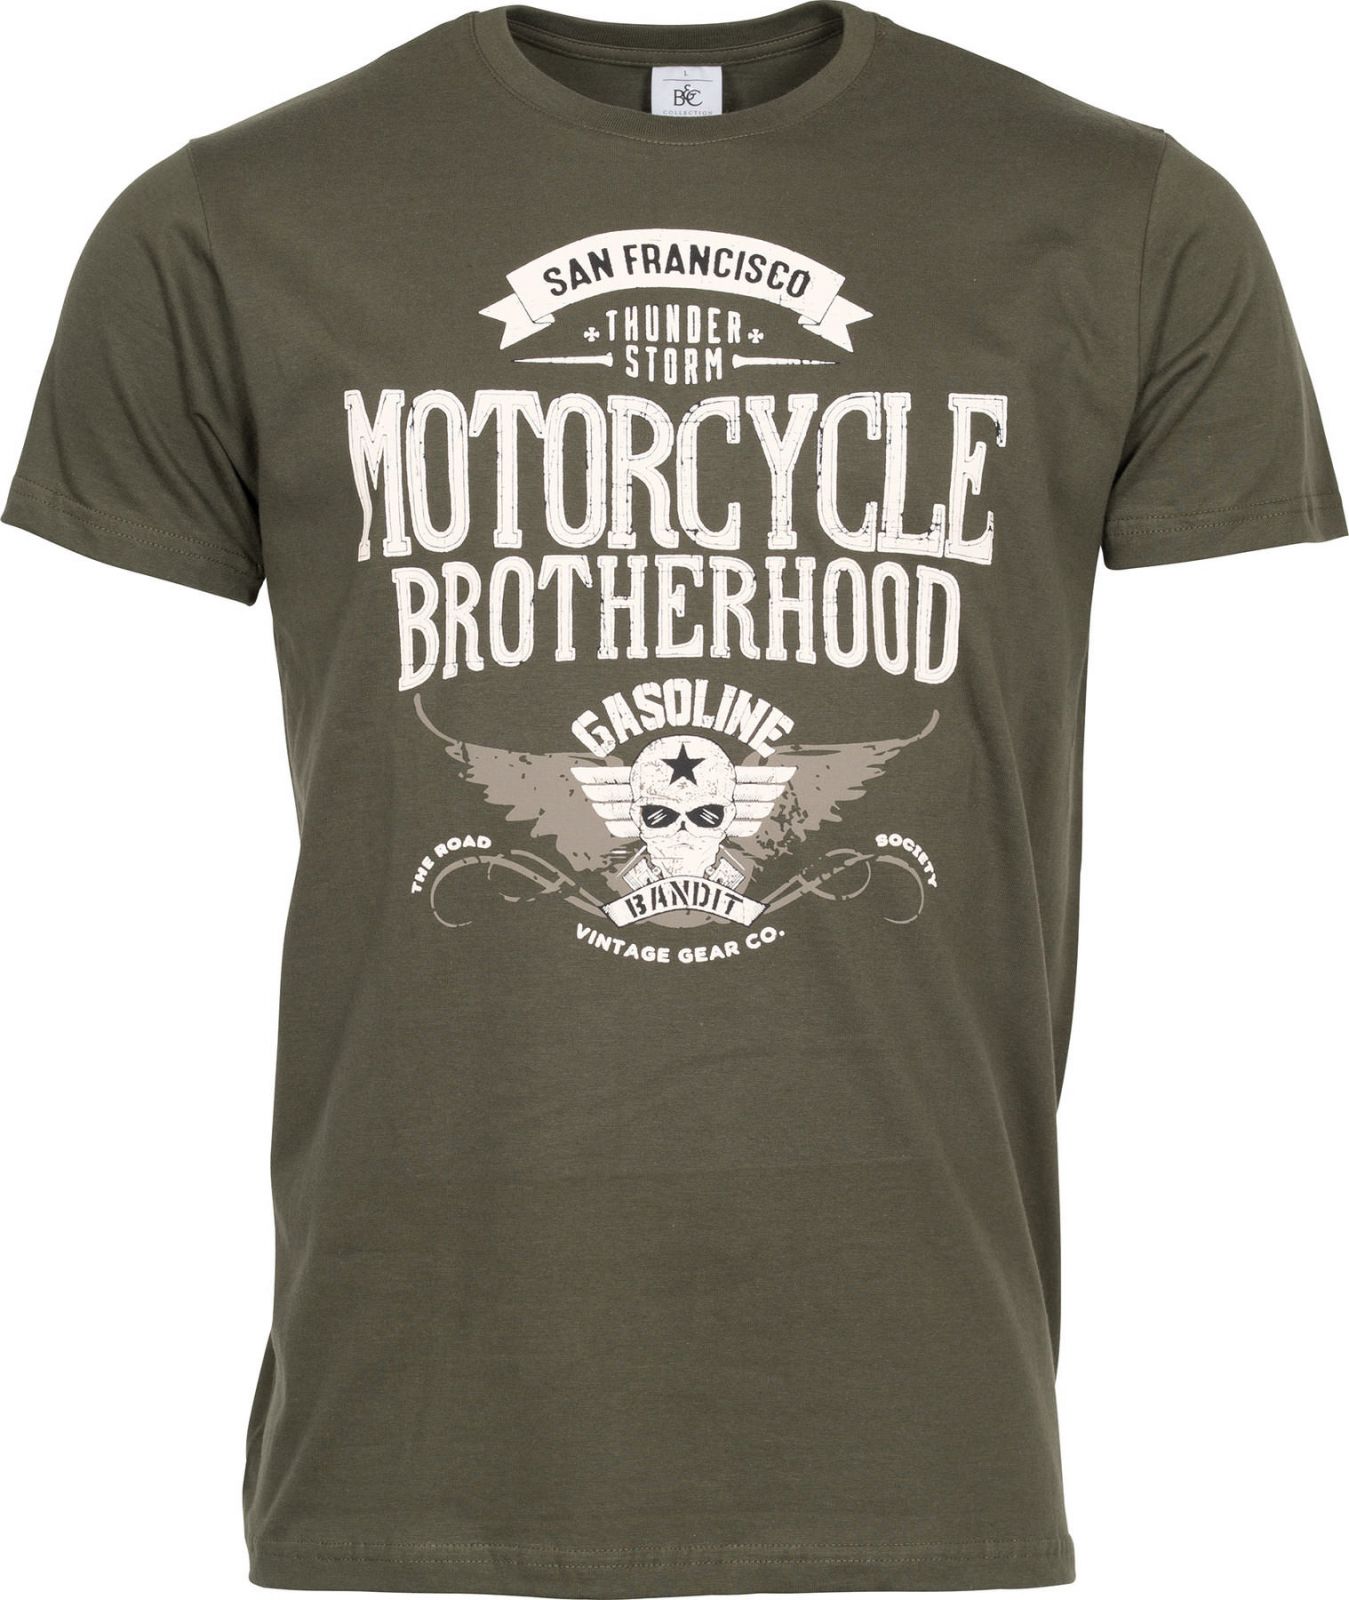 Pánské triko Motorcycle Brotherhood - tmavě olivová Gasoline Bandit